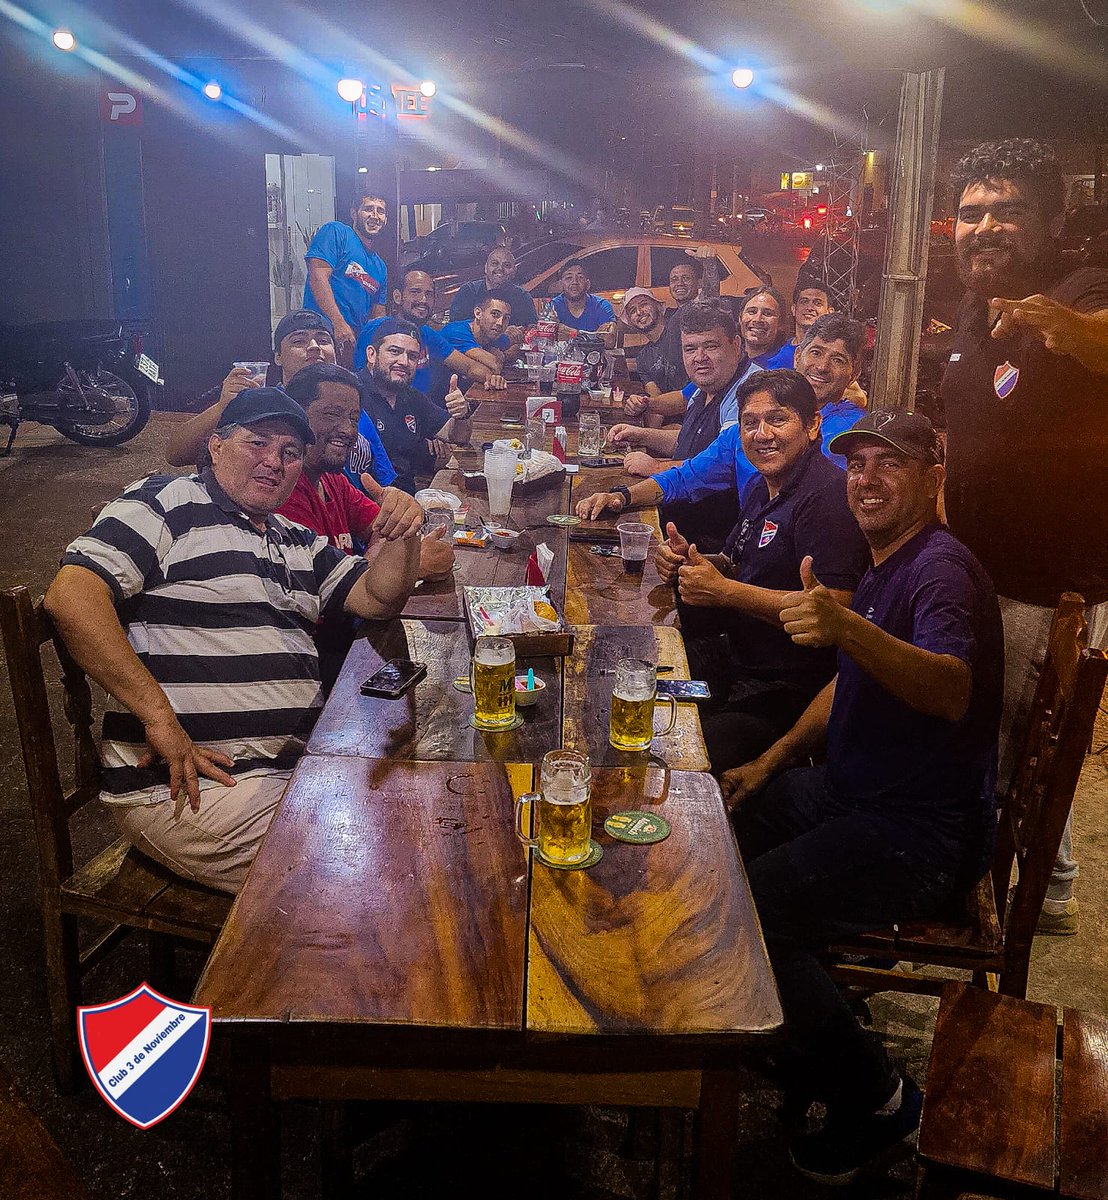 El 3 de Noviembre del Bo San Pablo se hizo fuerte de visita
Gran triunfo del tricolor.💪🏻
➡️ #Atlantida 0
➡️ #3deNoviembre 2
El equipo de Matador y un gran grupo de dirigentes e hinchas apoyando al club!
👏🏻👏🏻👏🏻👏🏻👏🏻